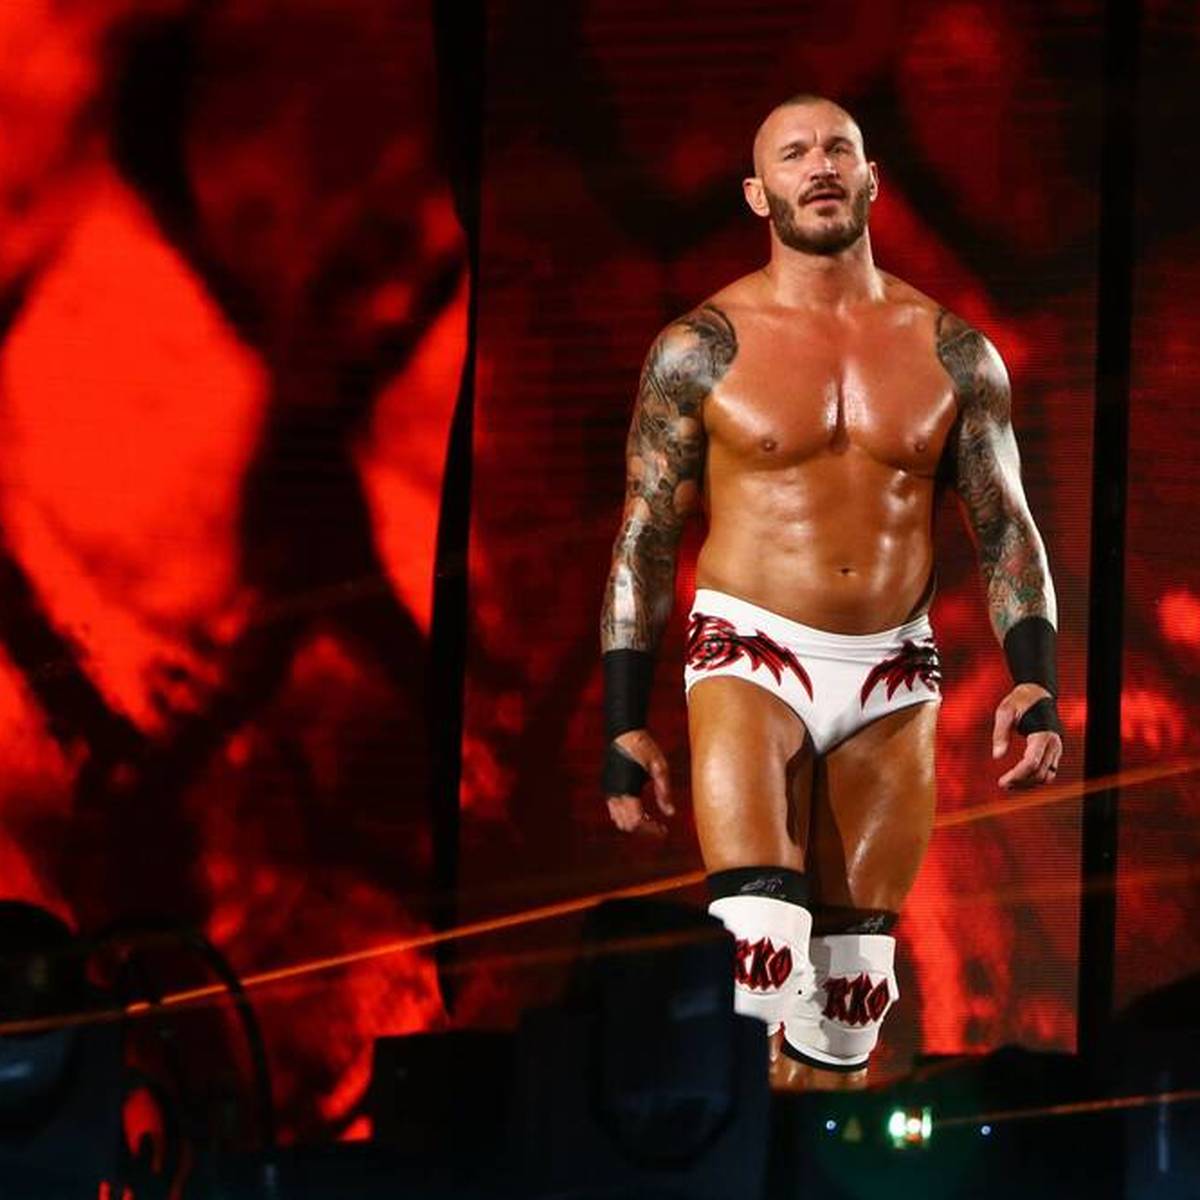 WWE-Topstar Randy Orton pausiert seit über vier Monaten wegen einer schweren Verletzung. Nun beunruhigt ein neuer Bericht über angeblich massive Sorgen um seine Gesundheit.